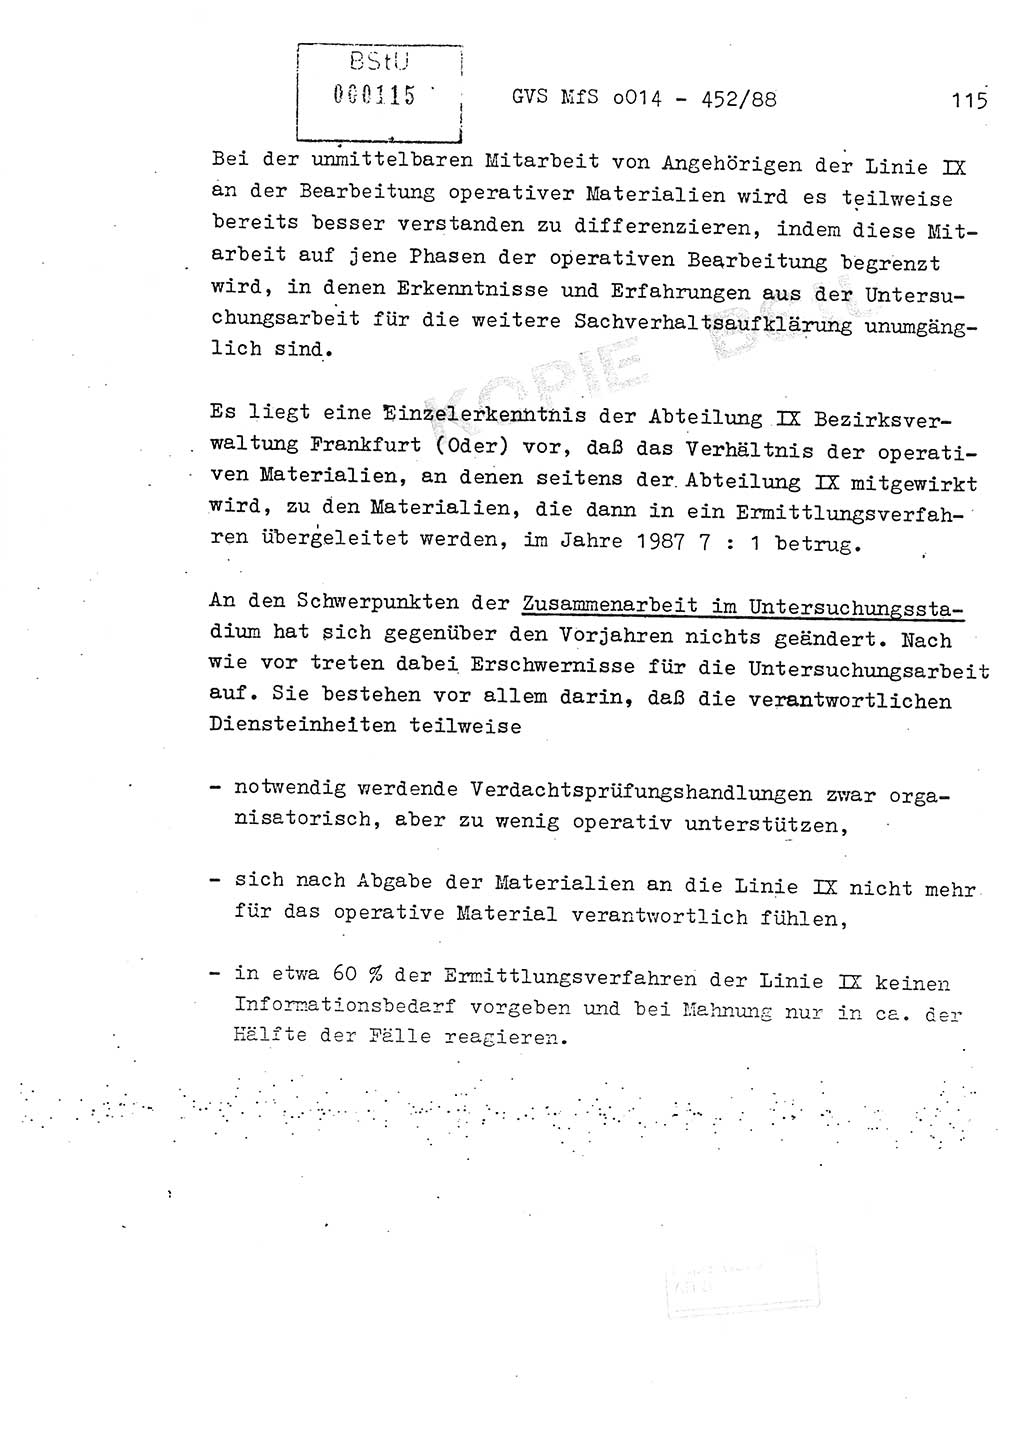 Jahresbericht der Hauptabteilung (HA) Ⅸ 1987, Einschätzung der Wirksamkeit der Untersuchungsarbeit im Jahre 1987, Ministerium für Staatssicherheit (MfS) der Deutschen Demokratischen Republik (DDR), Hauptabteilung Ⅸ, Geheime Verschlußsache (GVS) o014-452/88, Berlin 1988, Seite 115 (Einsch. MfS DDR HA Ⅸ GVS o014-452/88 1987, S. 115)